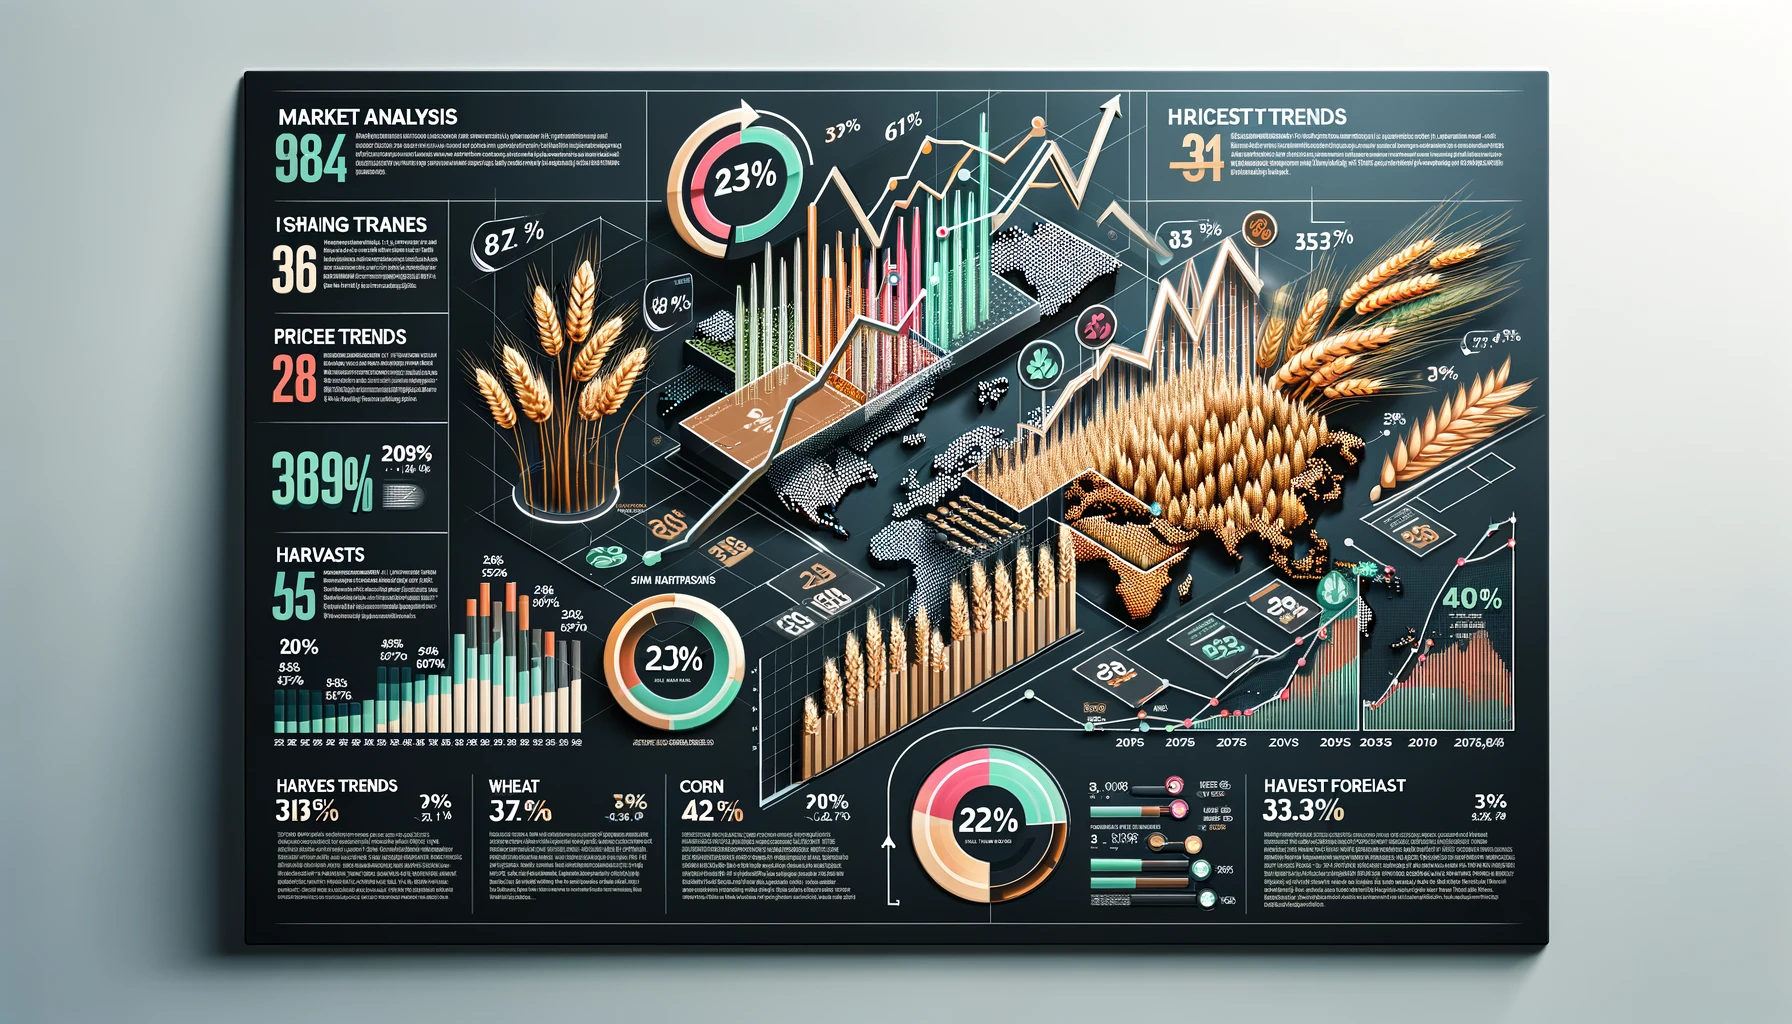 Beispiel Infografik mit Marktanalyse-Daten und -Trends im Agrarsektor, einschließlich verschiedener Diagrammtypen, die Ernteerträge und Preistendenzen von Getreide visualisieren.